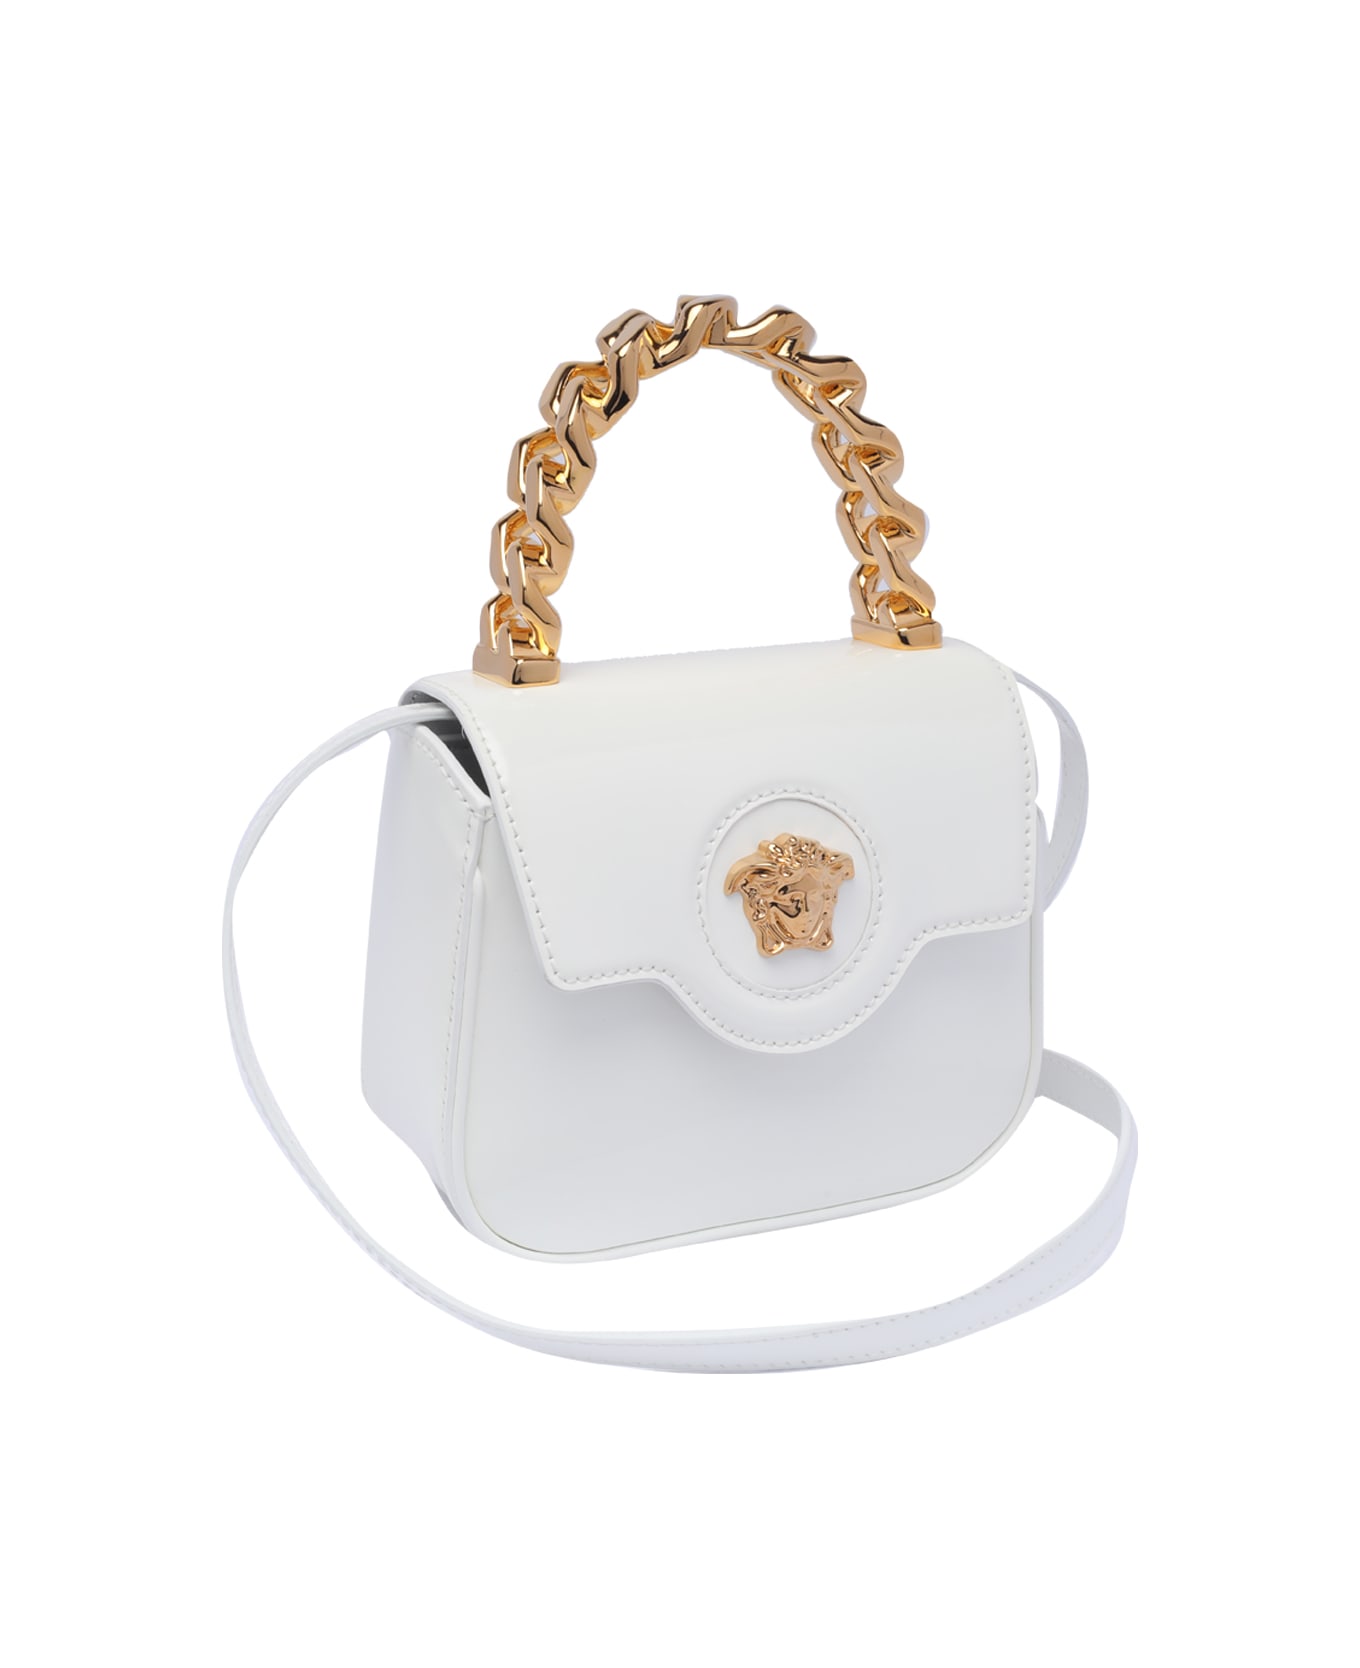 Versace Mini La Medusa Handbag - White